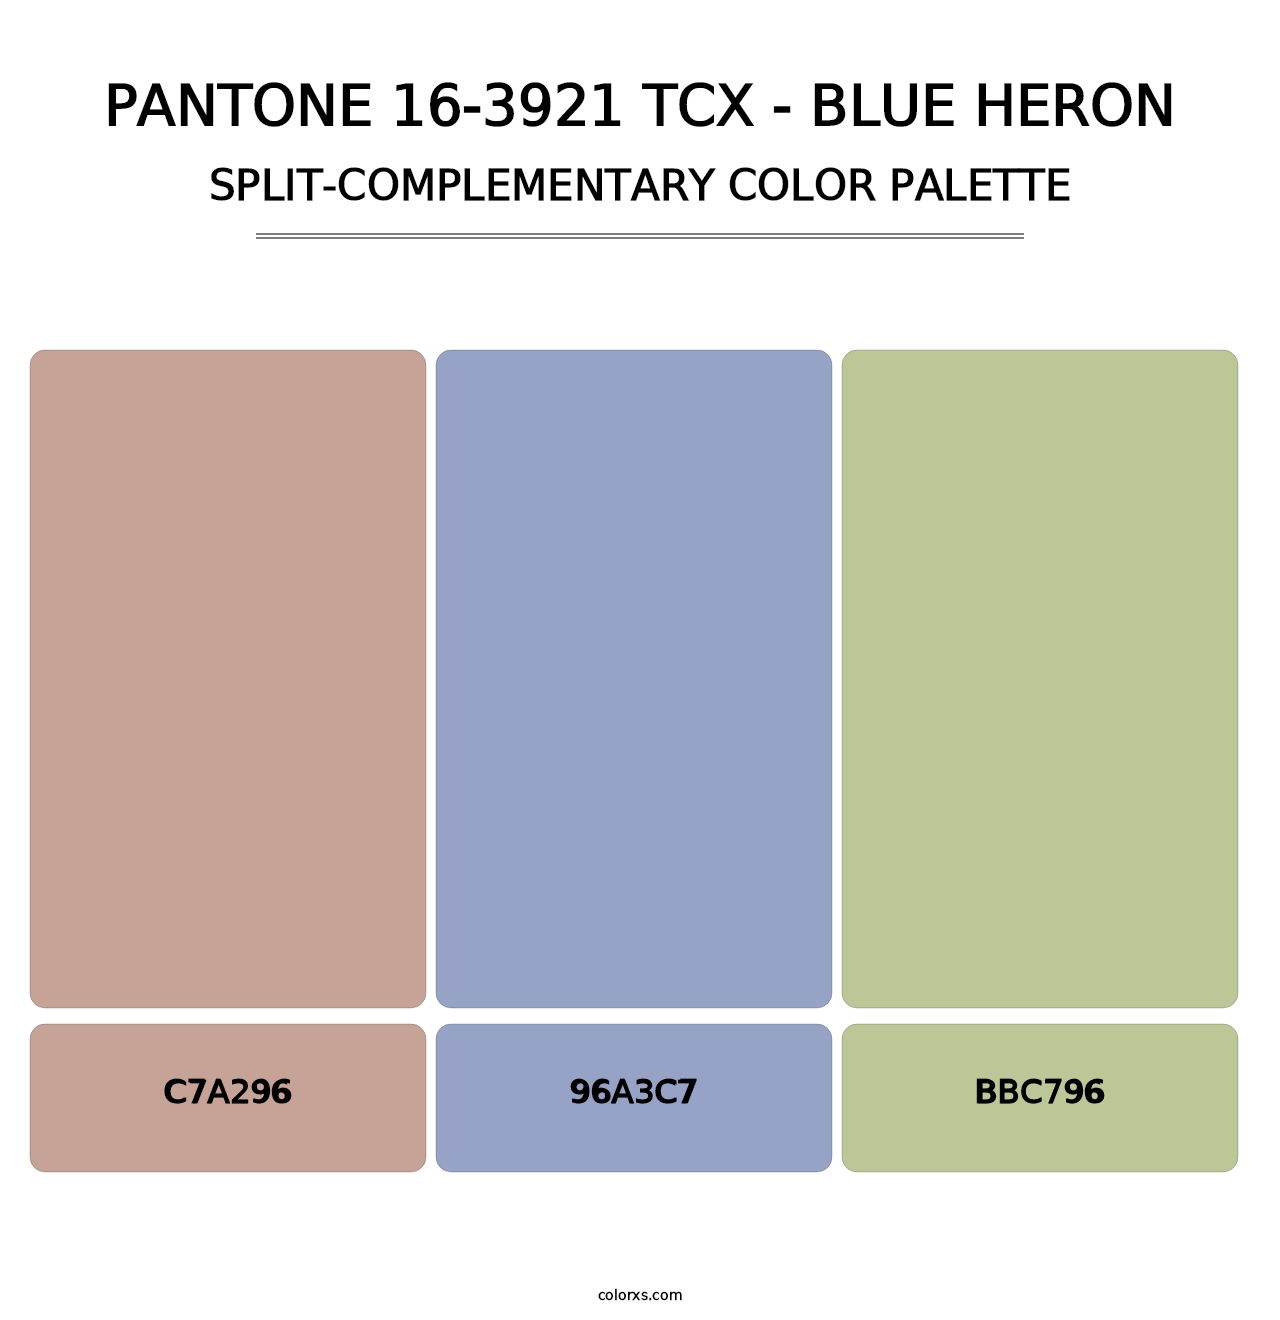 PANTONE 16-3921 TCX - Blue Heron - Split-Complementary Color Palette